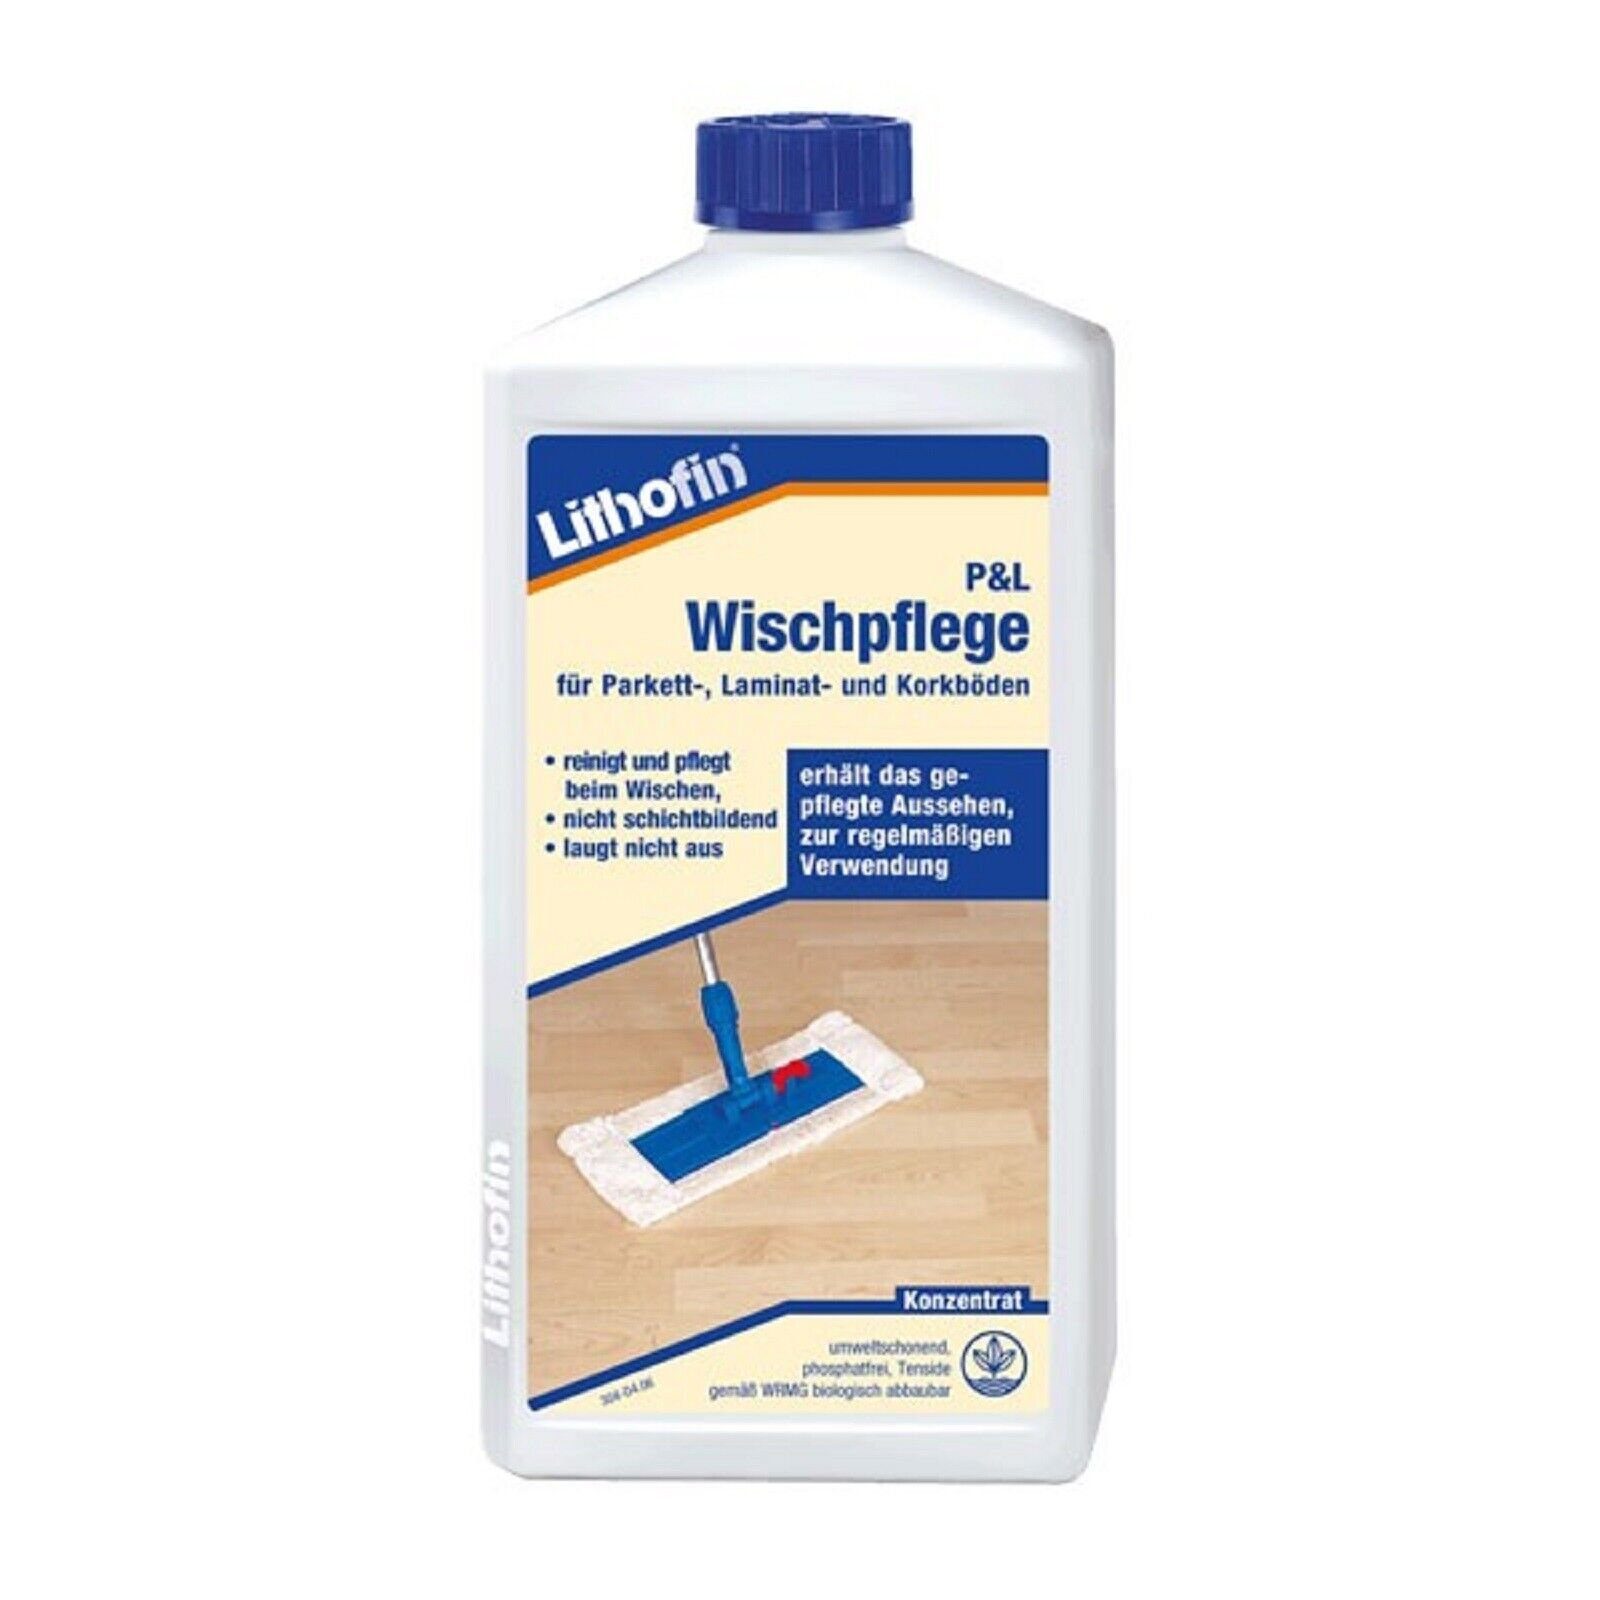 Lithofin Lithofin P&L Wischpflege für Parkett Laminat und Korkböden 1 Liter Fussbodenreiniger